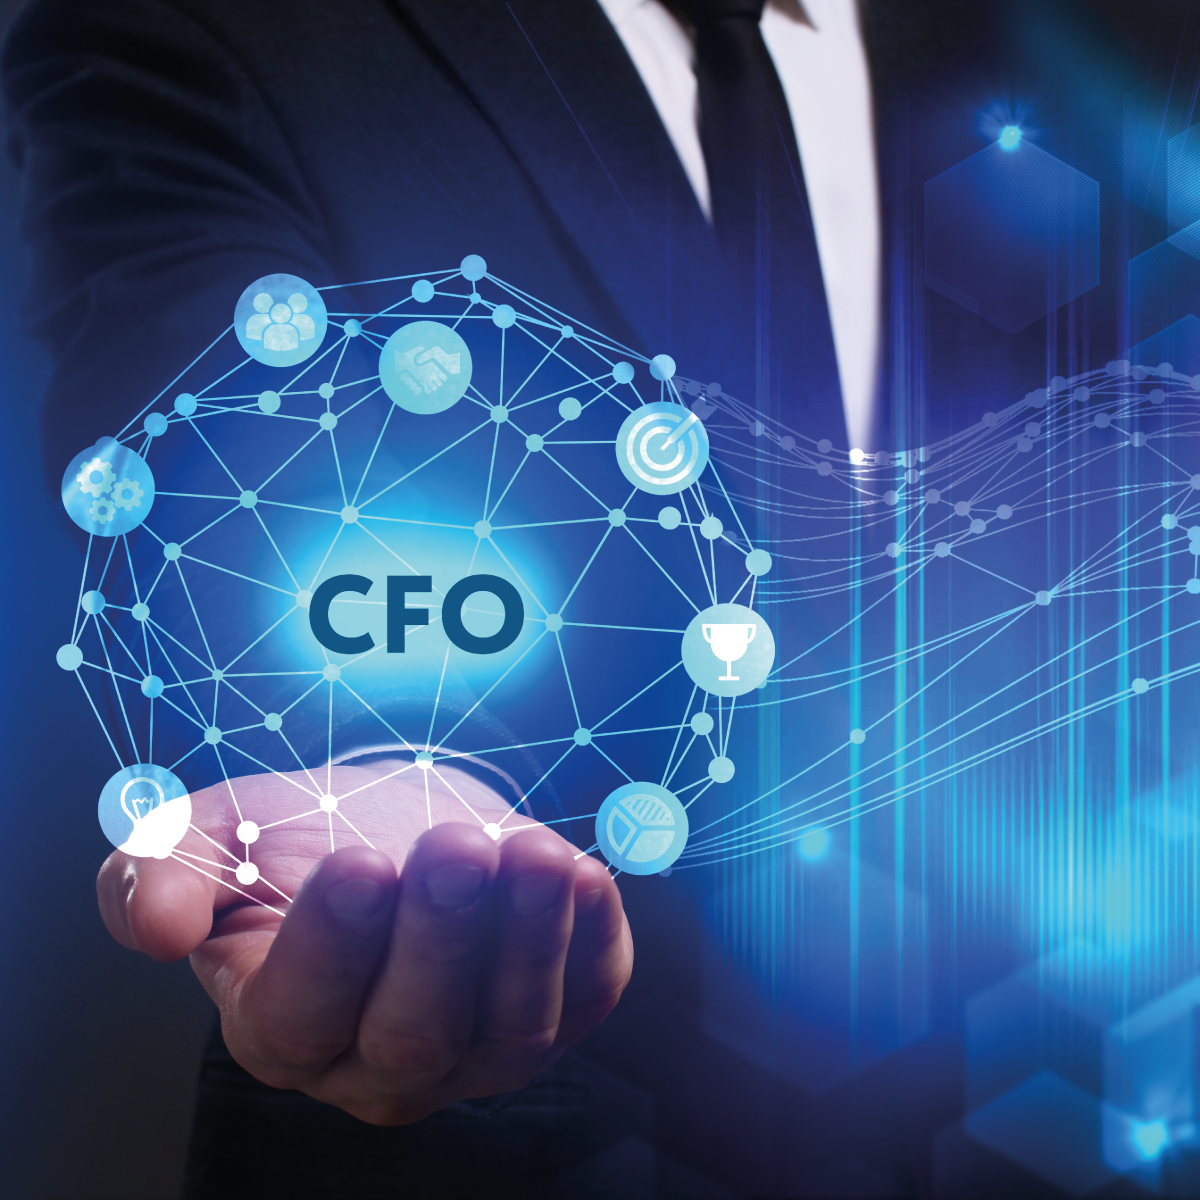 CFO as a Service